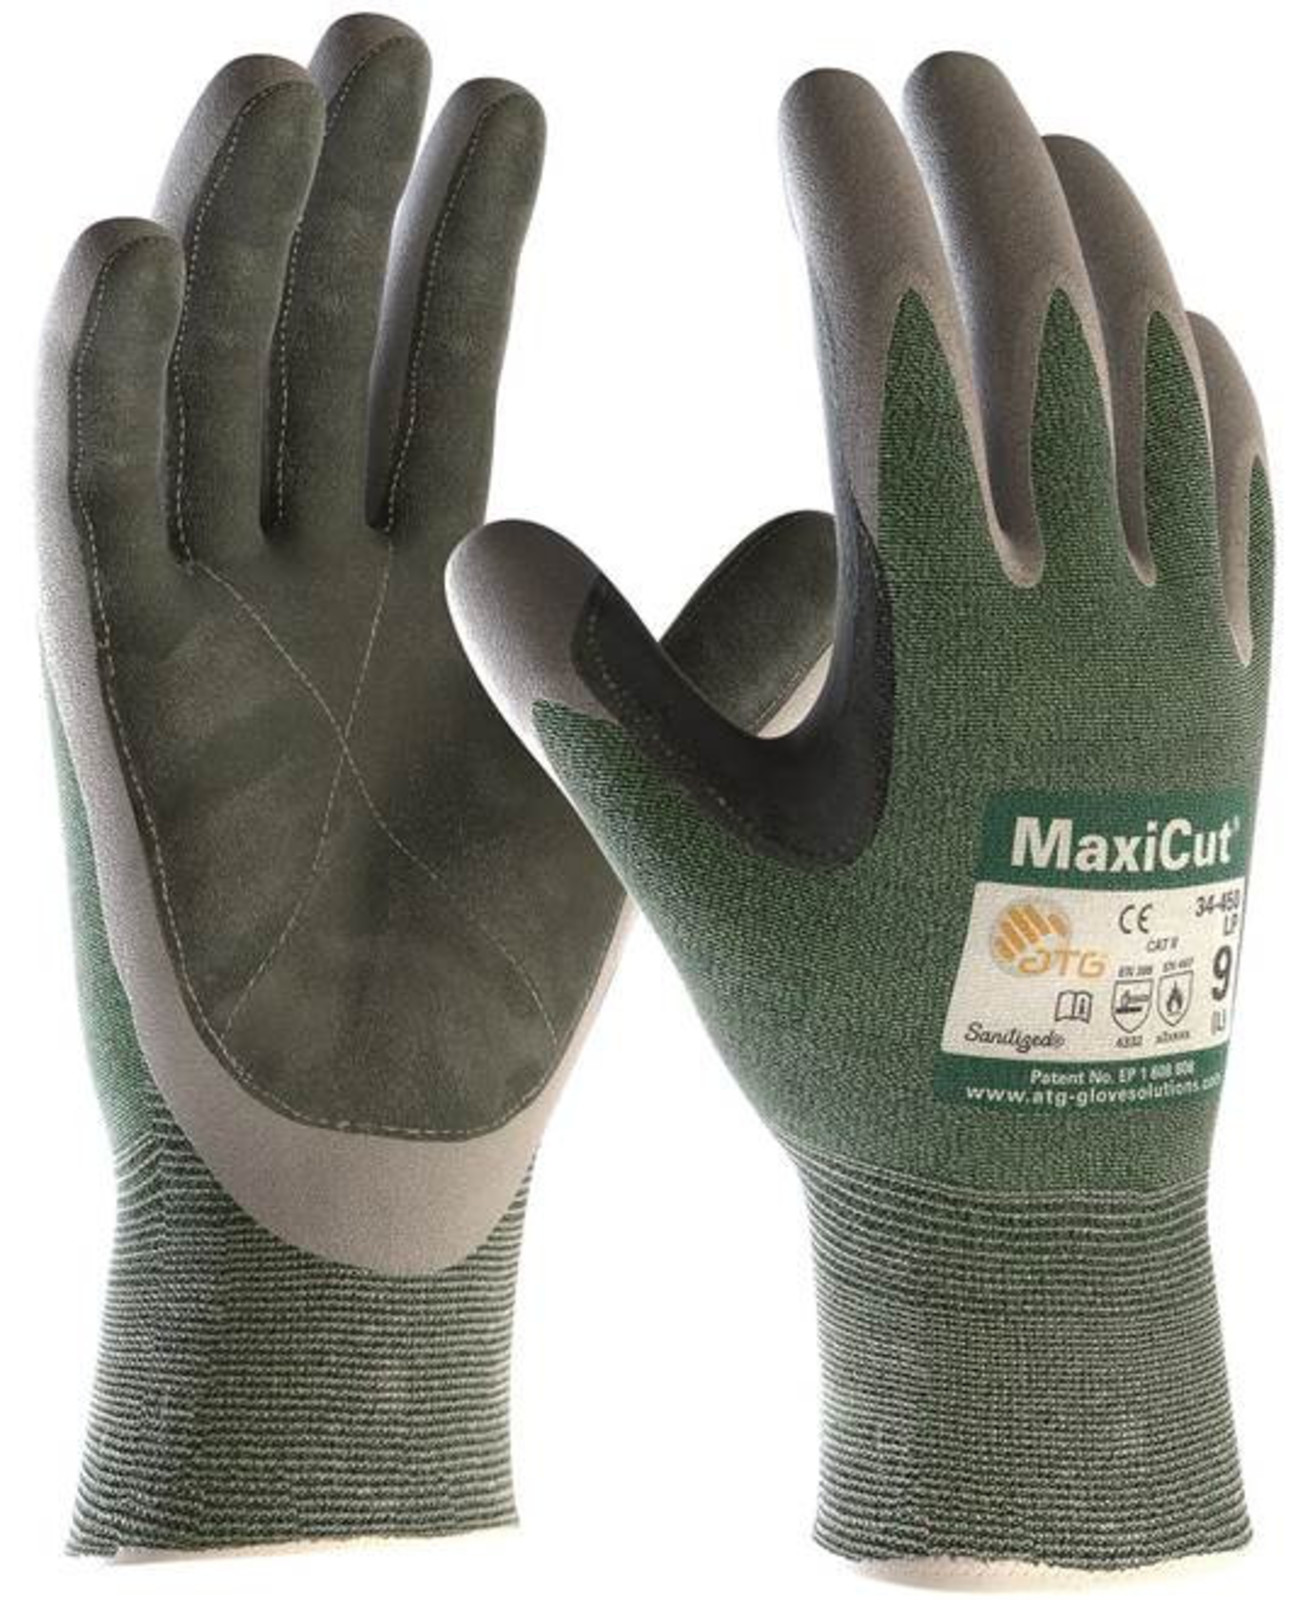 Protiporézne rukavice ATG MaxiCut 34-450 LP - veľkosť: 8/M, farba: zelená